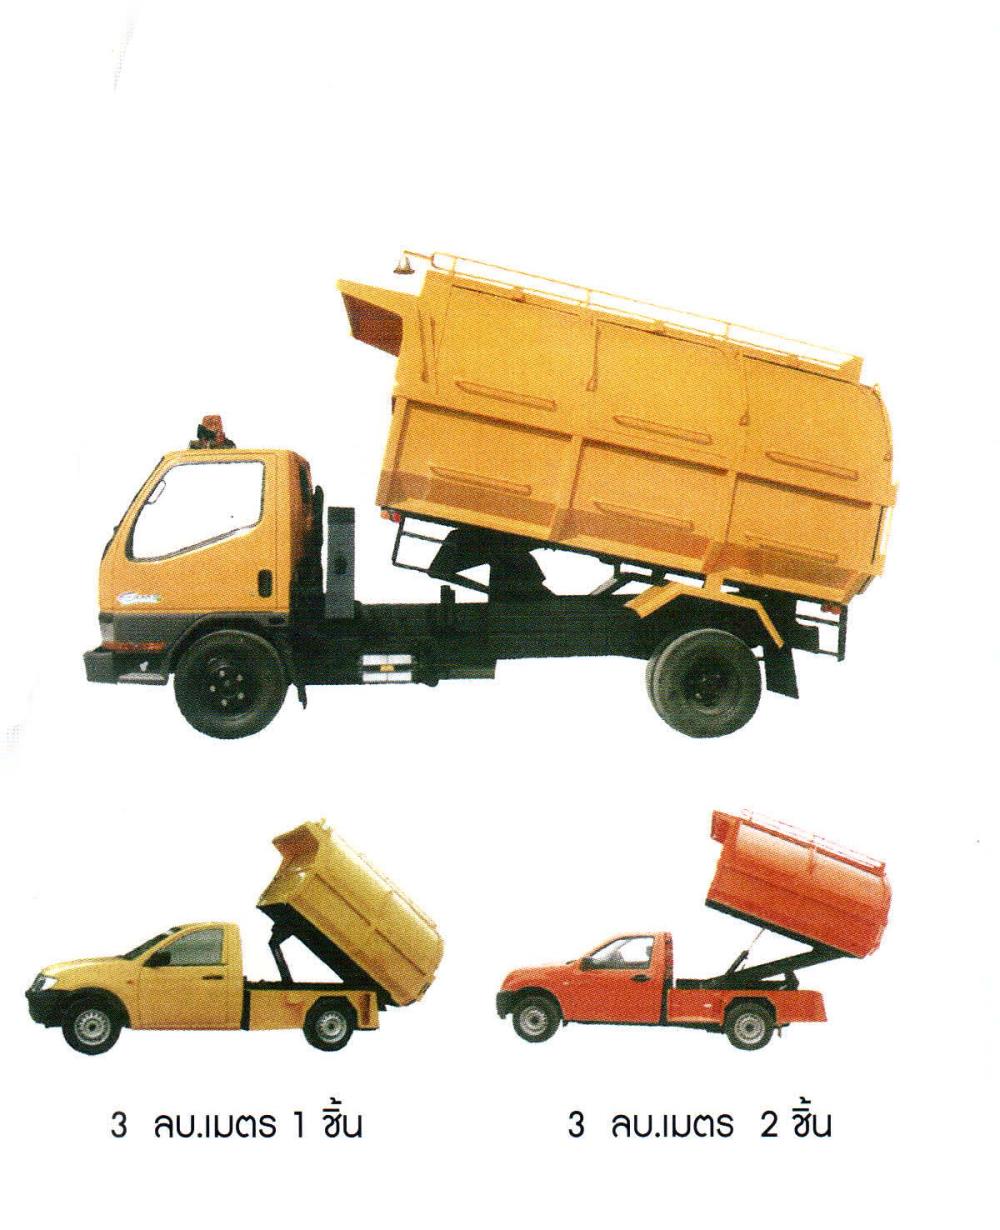 รถขยะเปิดข้างเทท้าย,รถขยะ,รถขยะเปิดข้างเทท้าย,garbage truck,-,Plant and Facility Equipment/Cleaning Equipment and Supplies/Cleaners